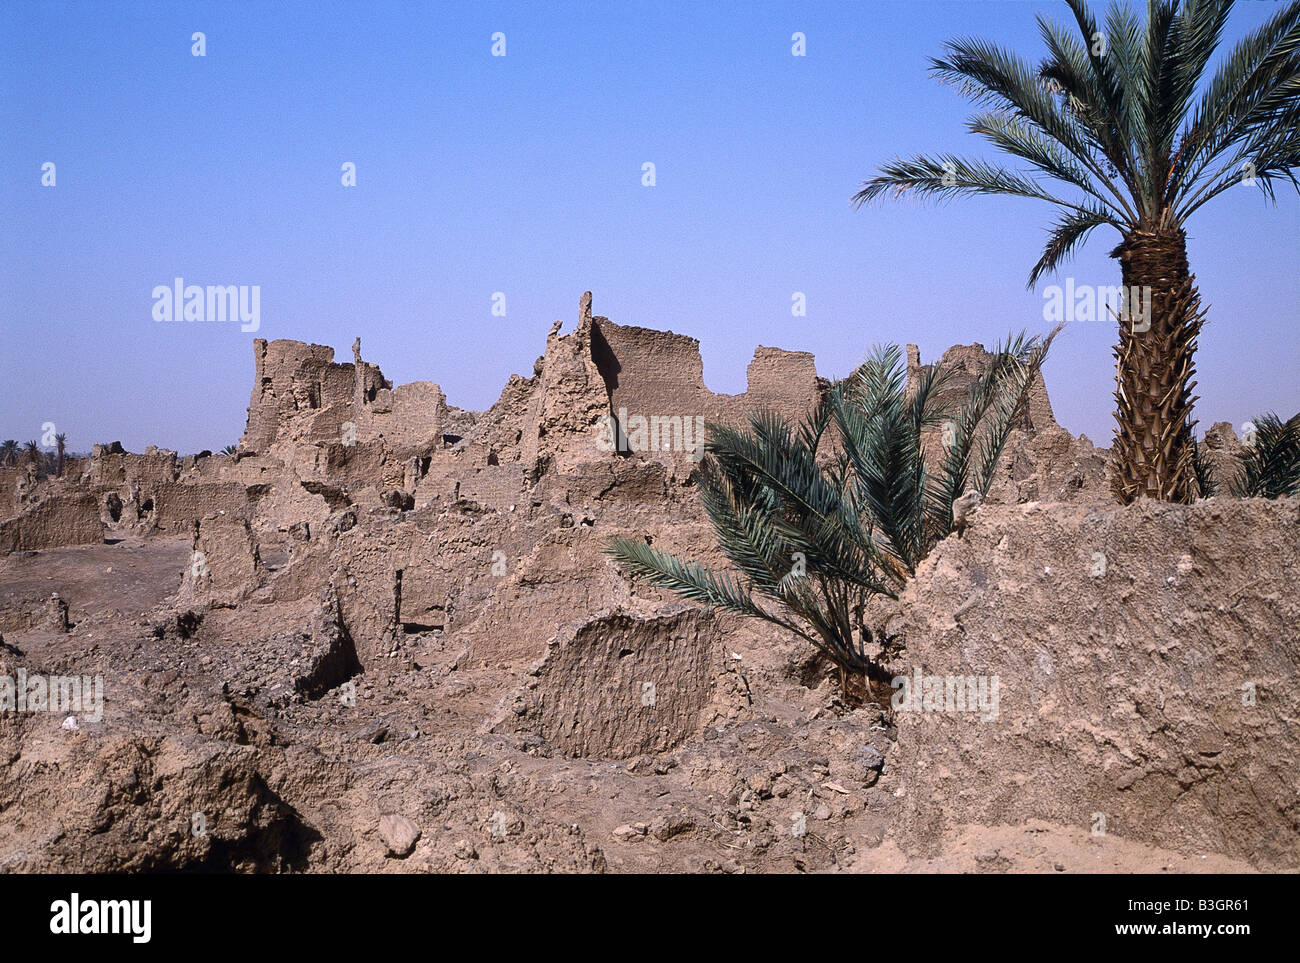 The ruins of the mud-built city of Germa or Garama at Wadi Al Hayat in the Sahara Desert, Libya. Stock Photo